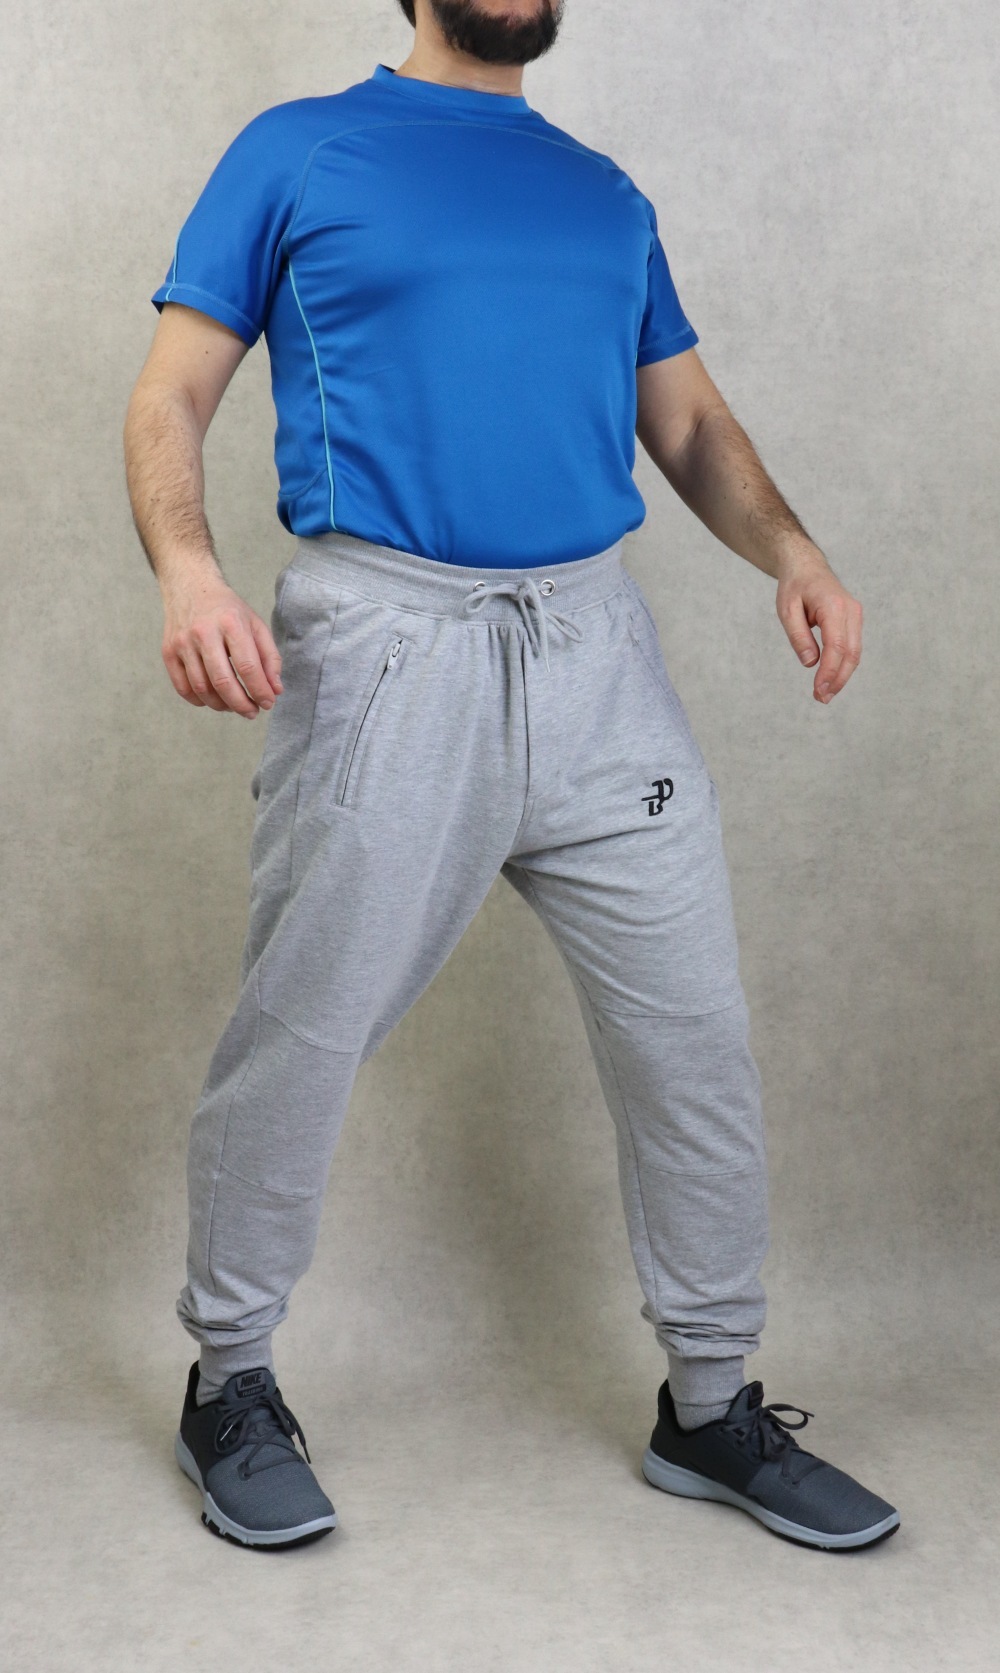 Veste jogging zippée légère bicolore à capuche de marque Best Ummah -  Couleur Bleu marine et blanc